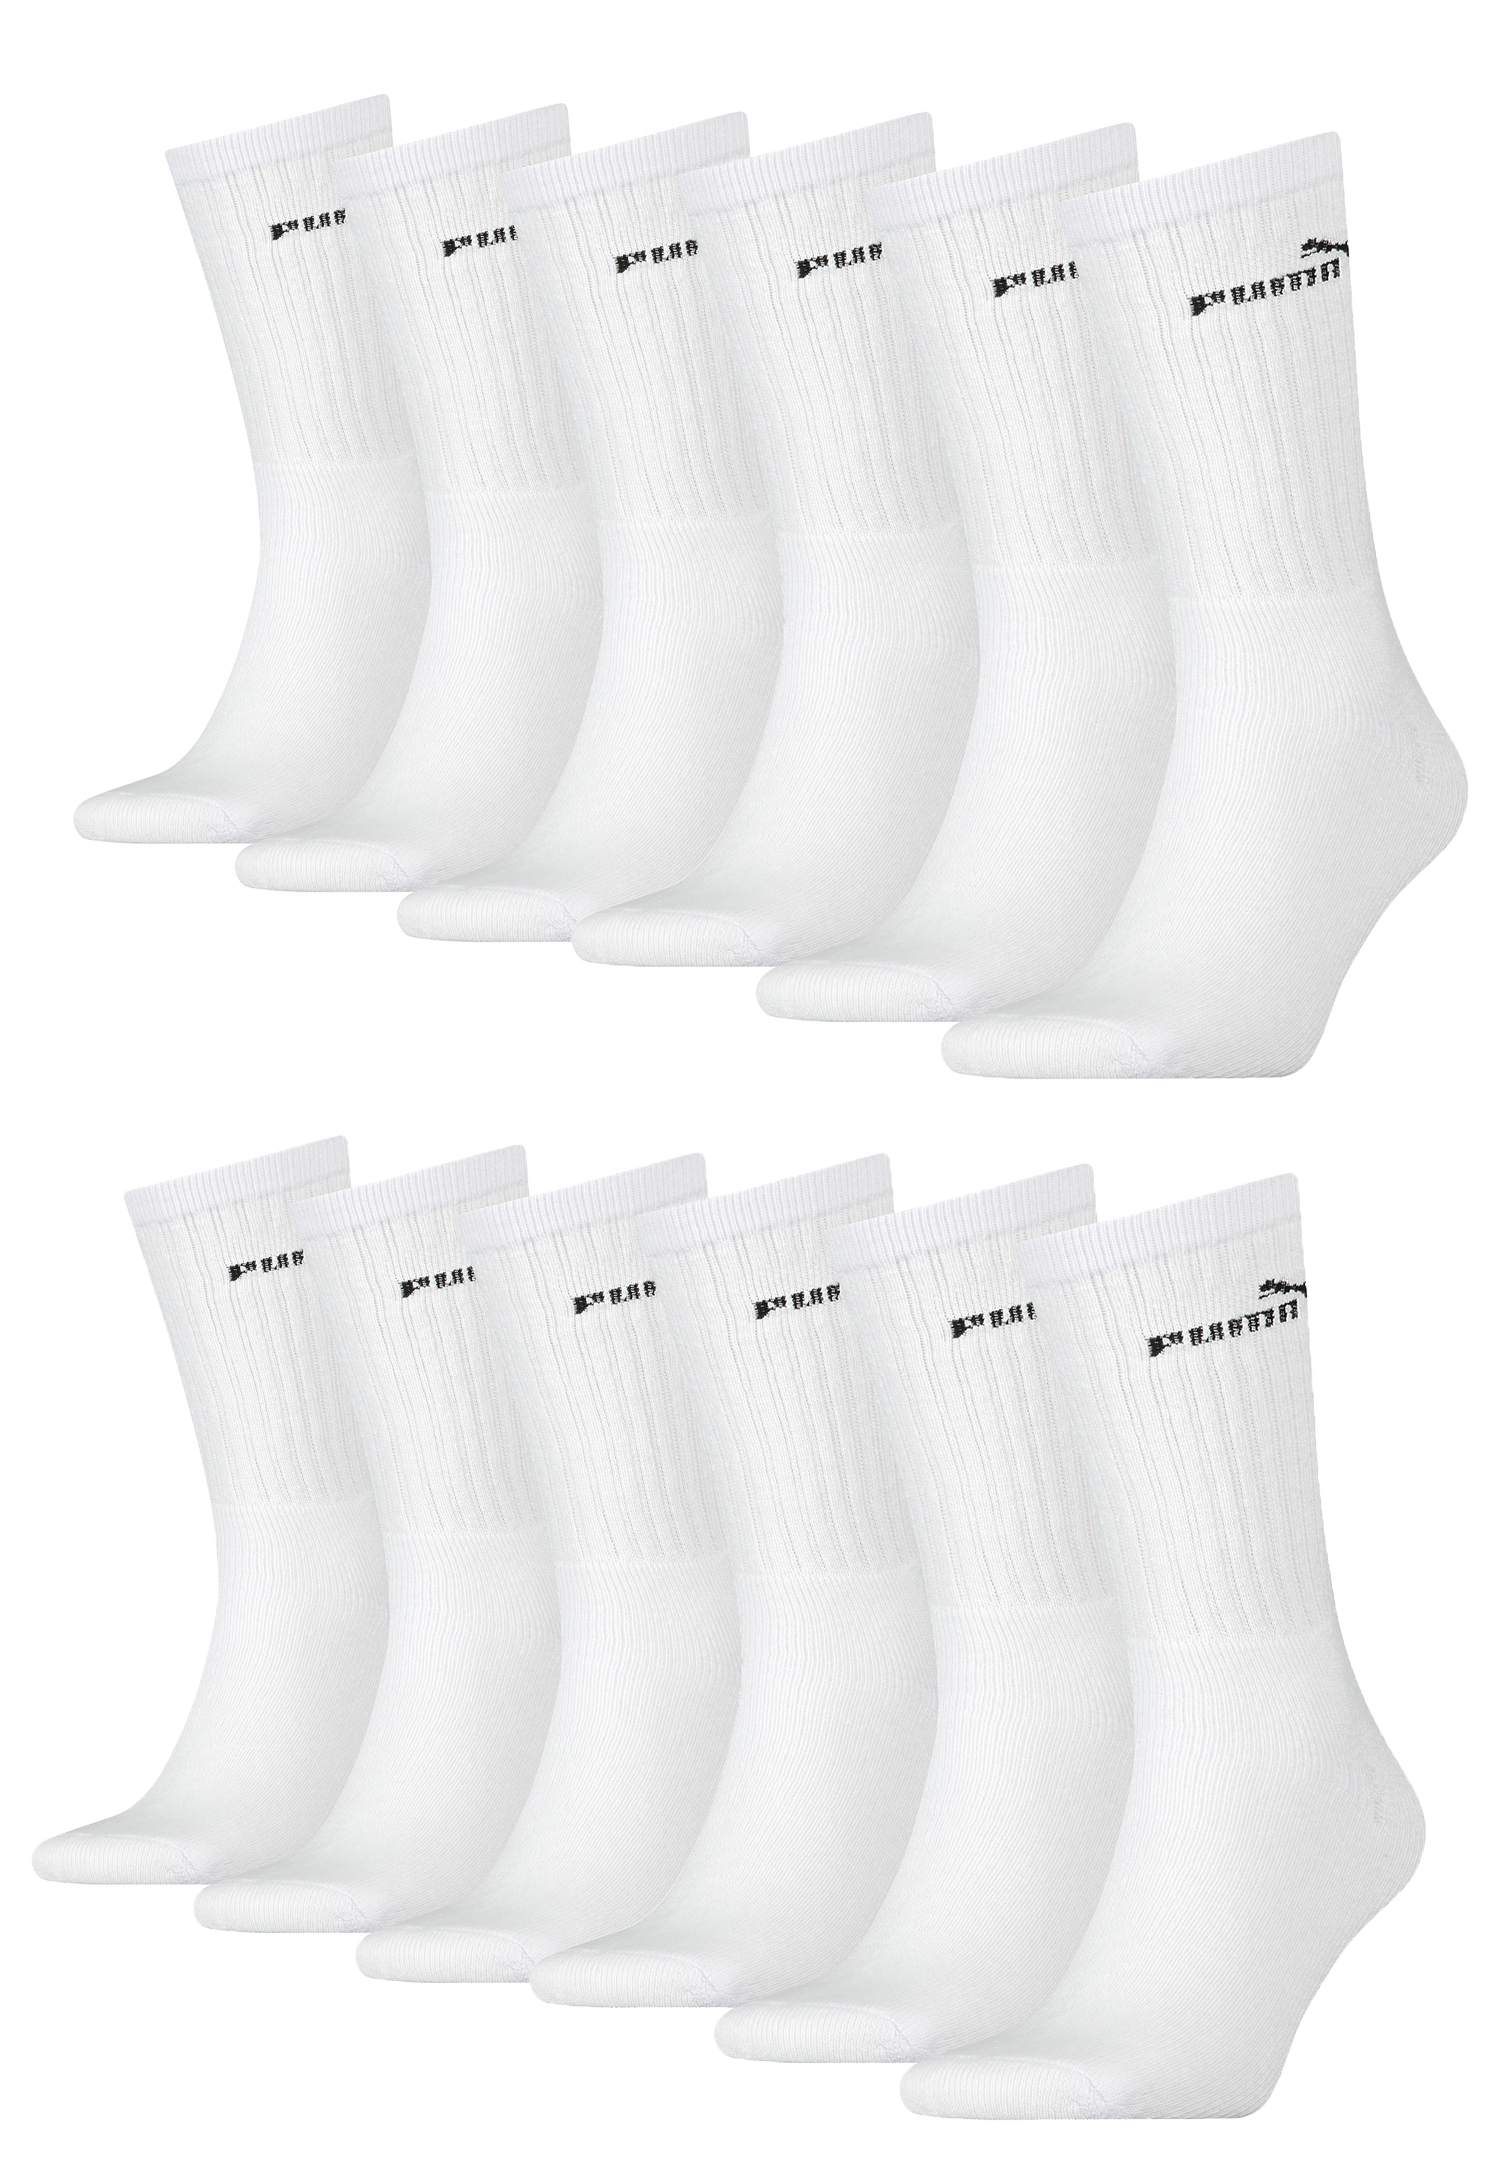 Puma Unisex Crew Tennissocken Sportsocken Socken für Damen Herren 12 Paar